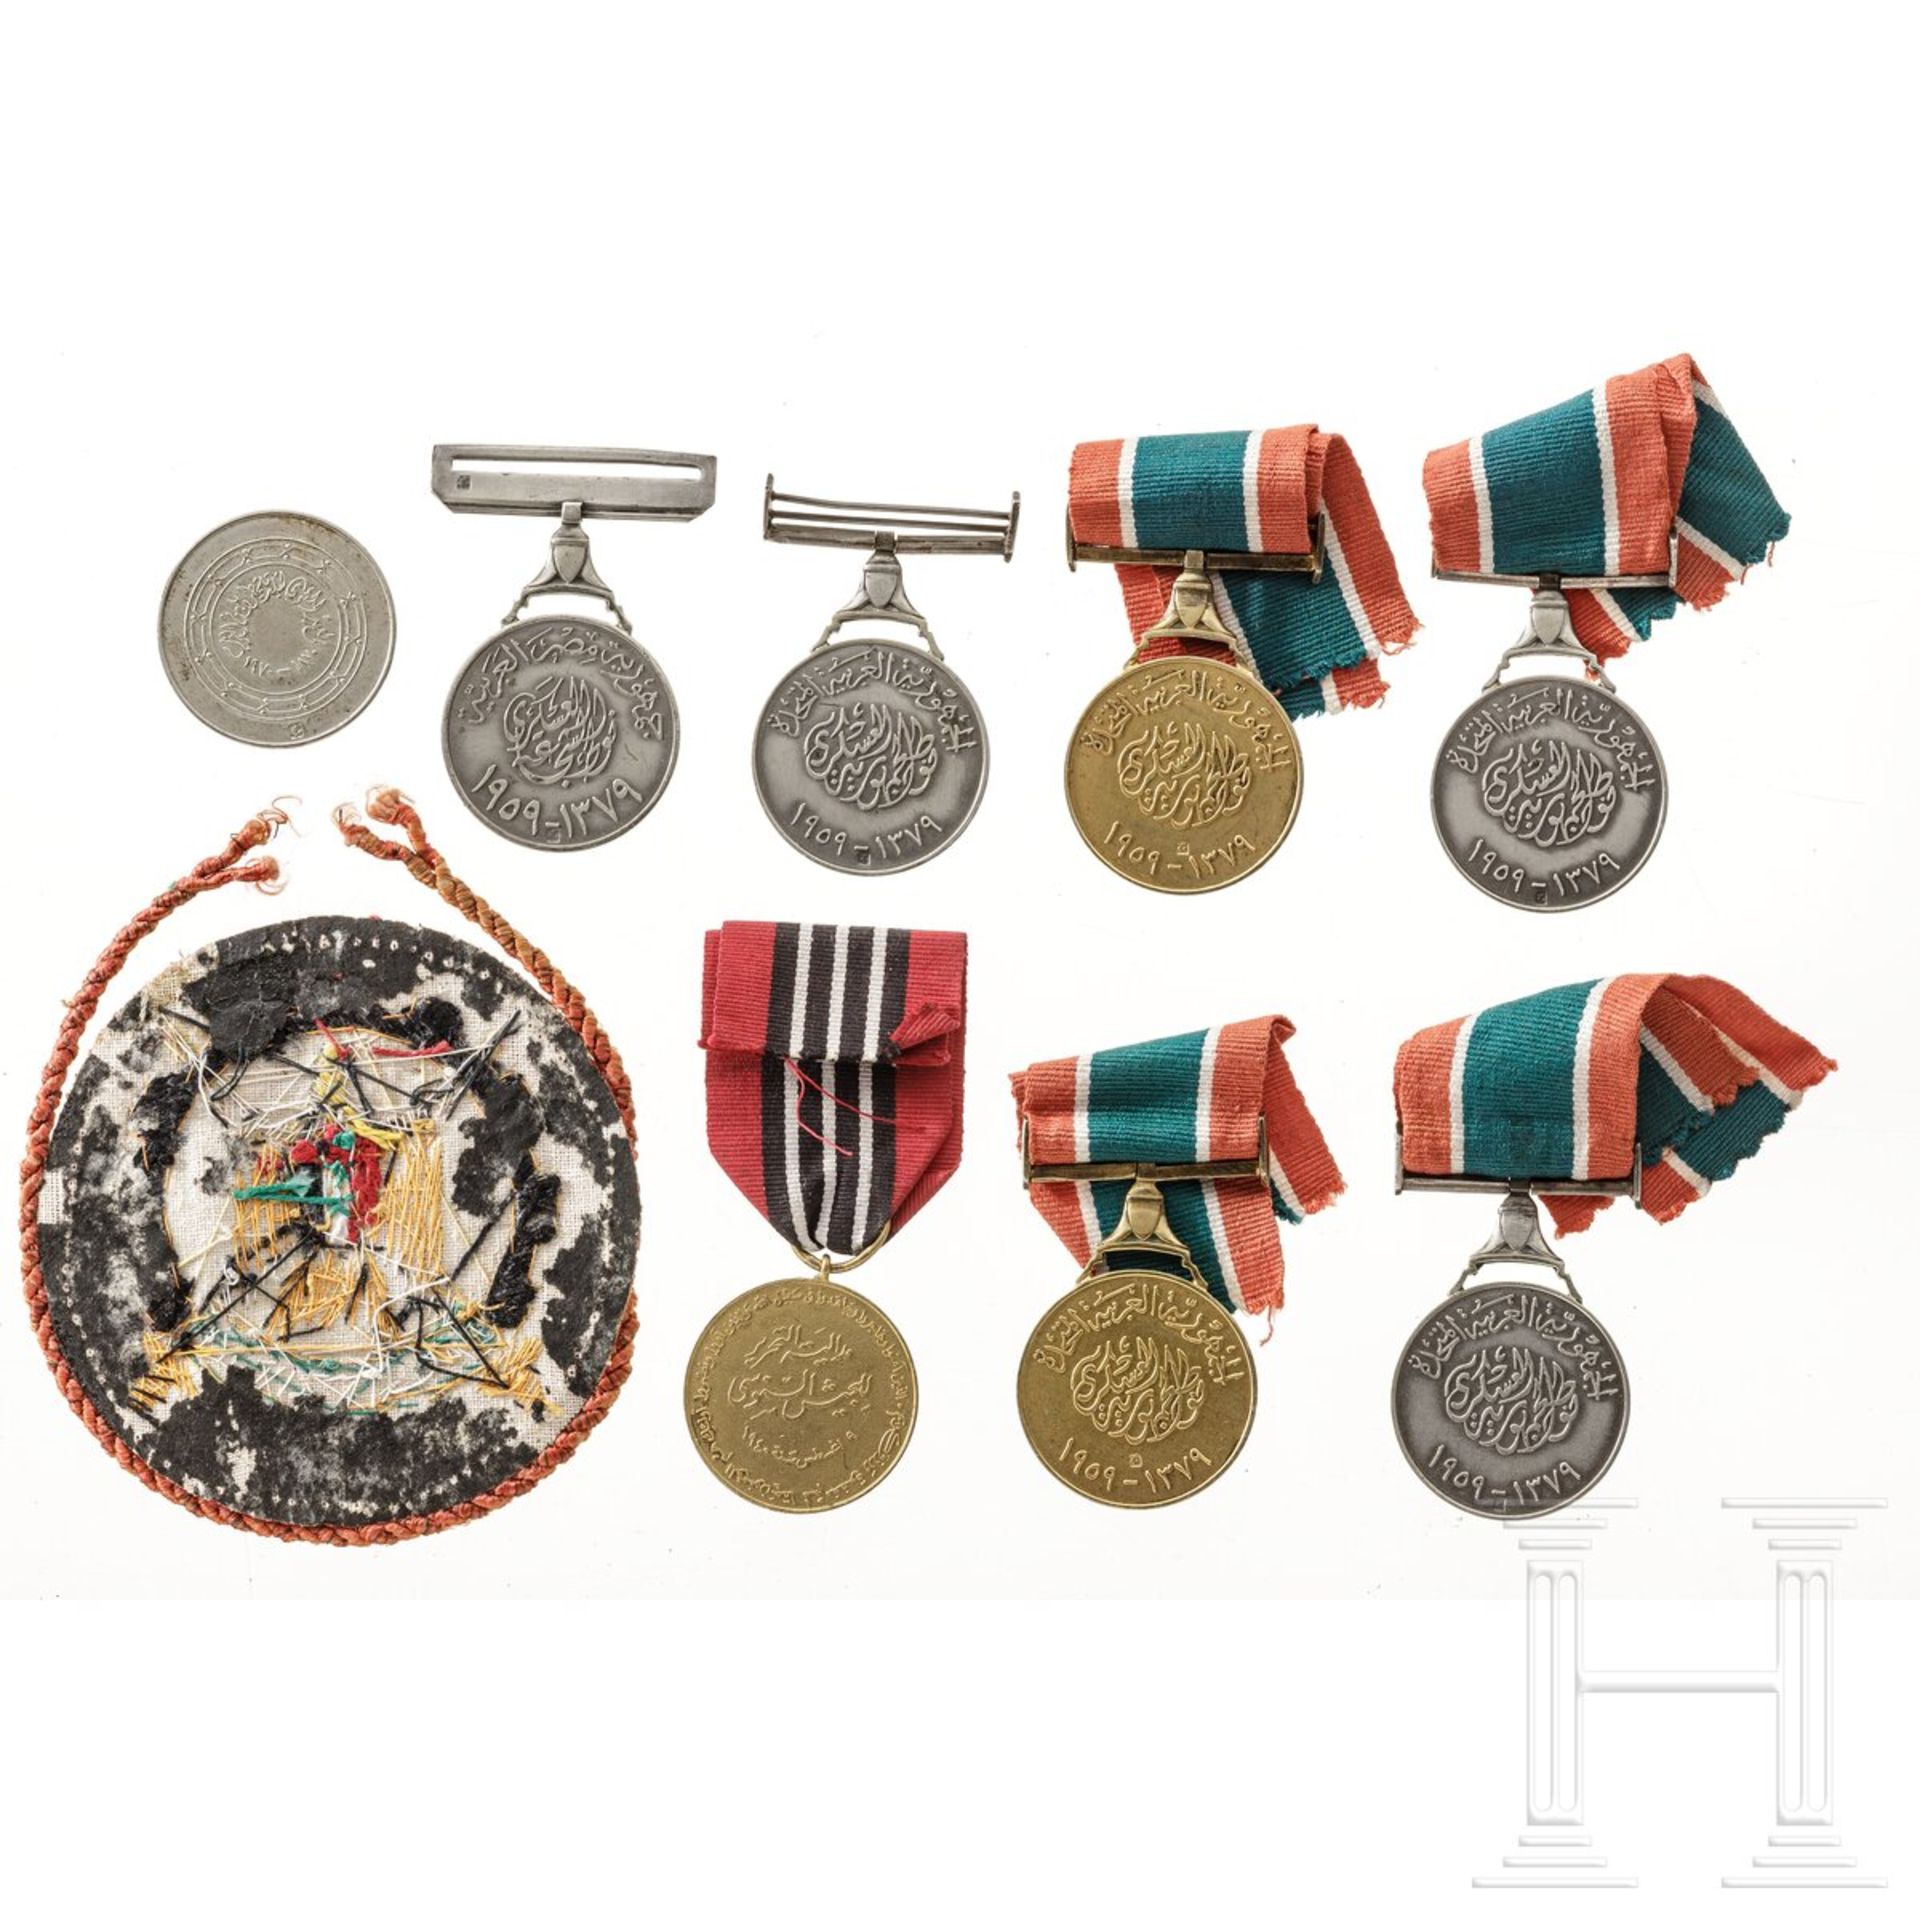 Königreich Libyen - acht Medaillen - Image 2 of 3